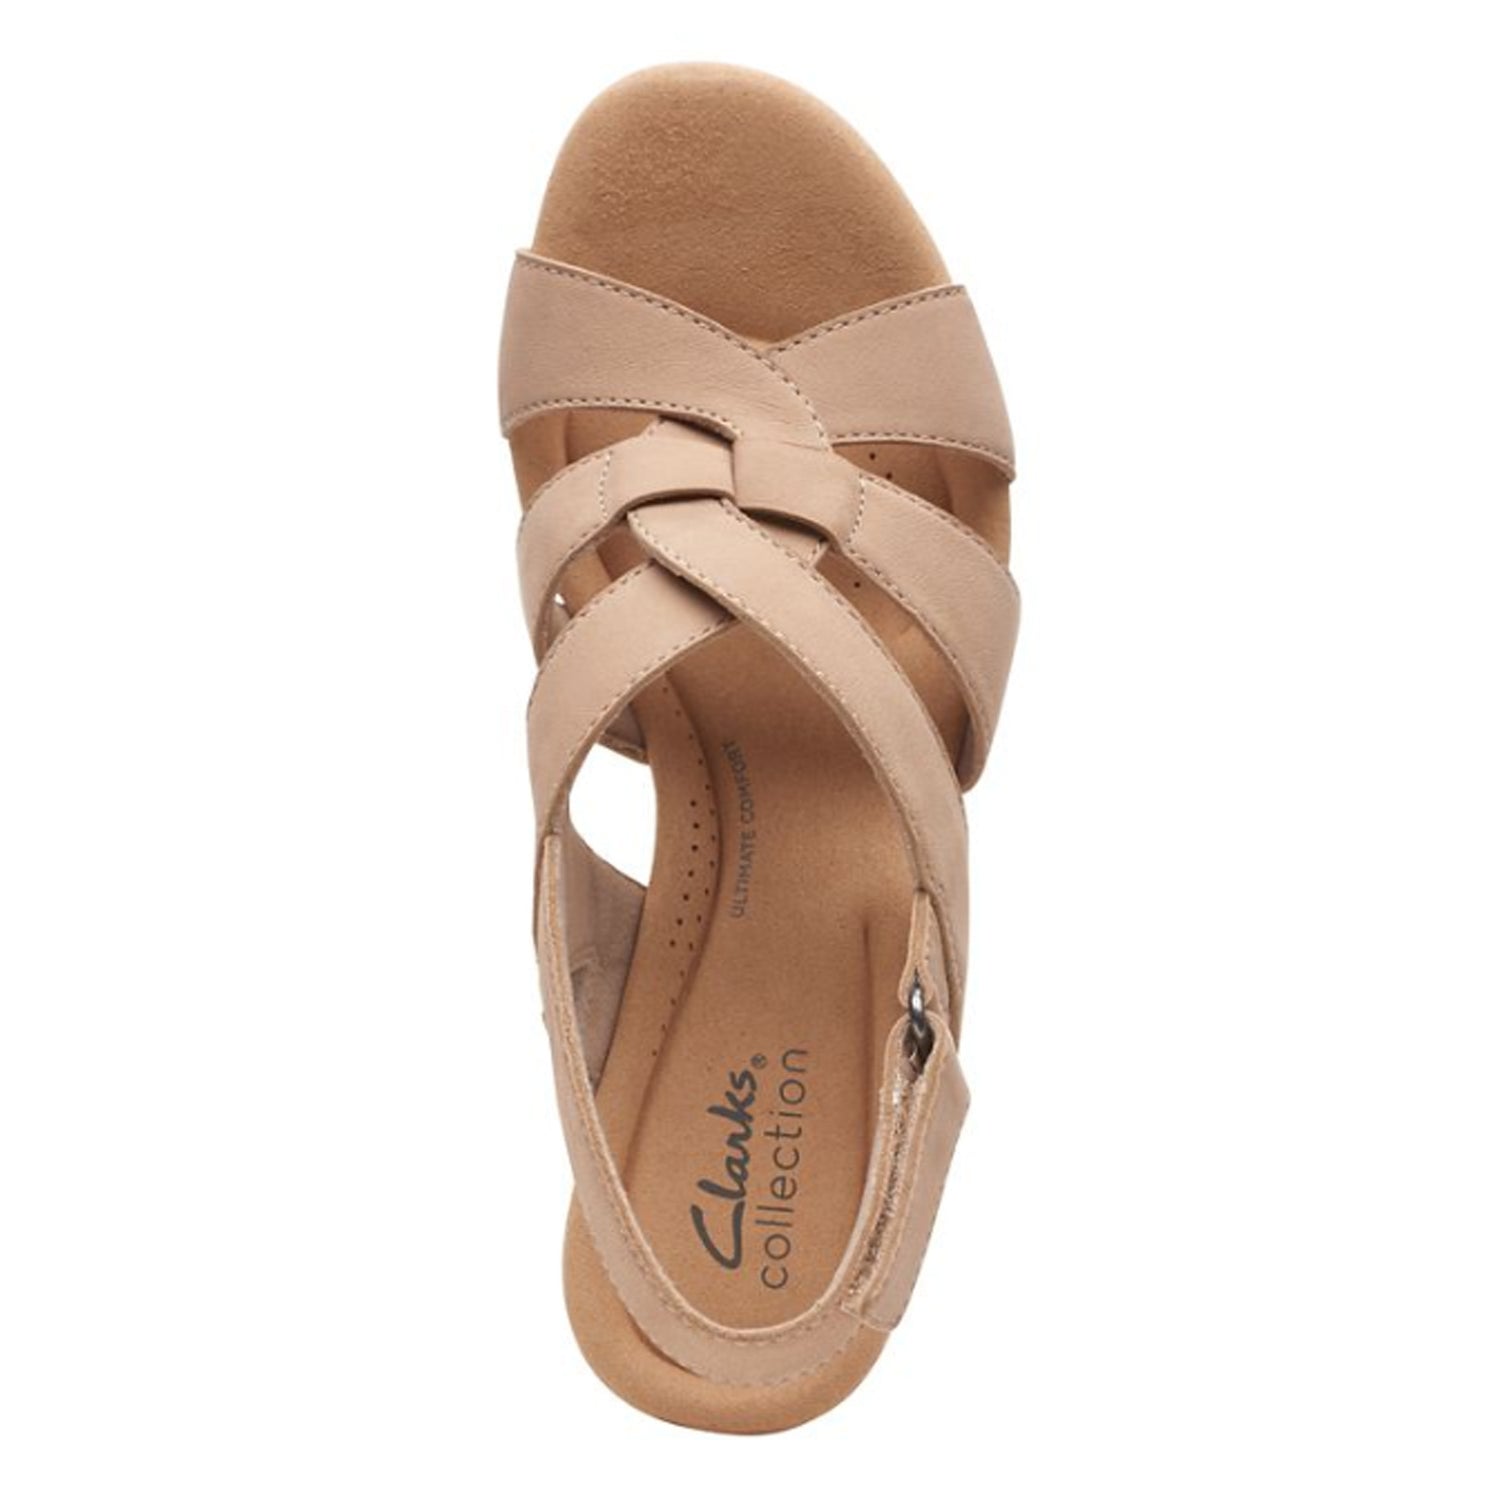 Peltz Shoes  Women's Clarks Giselle Beach Sandal SAND 26166997